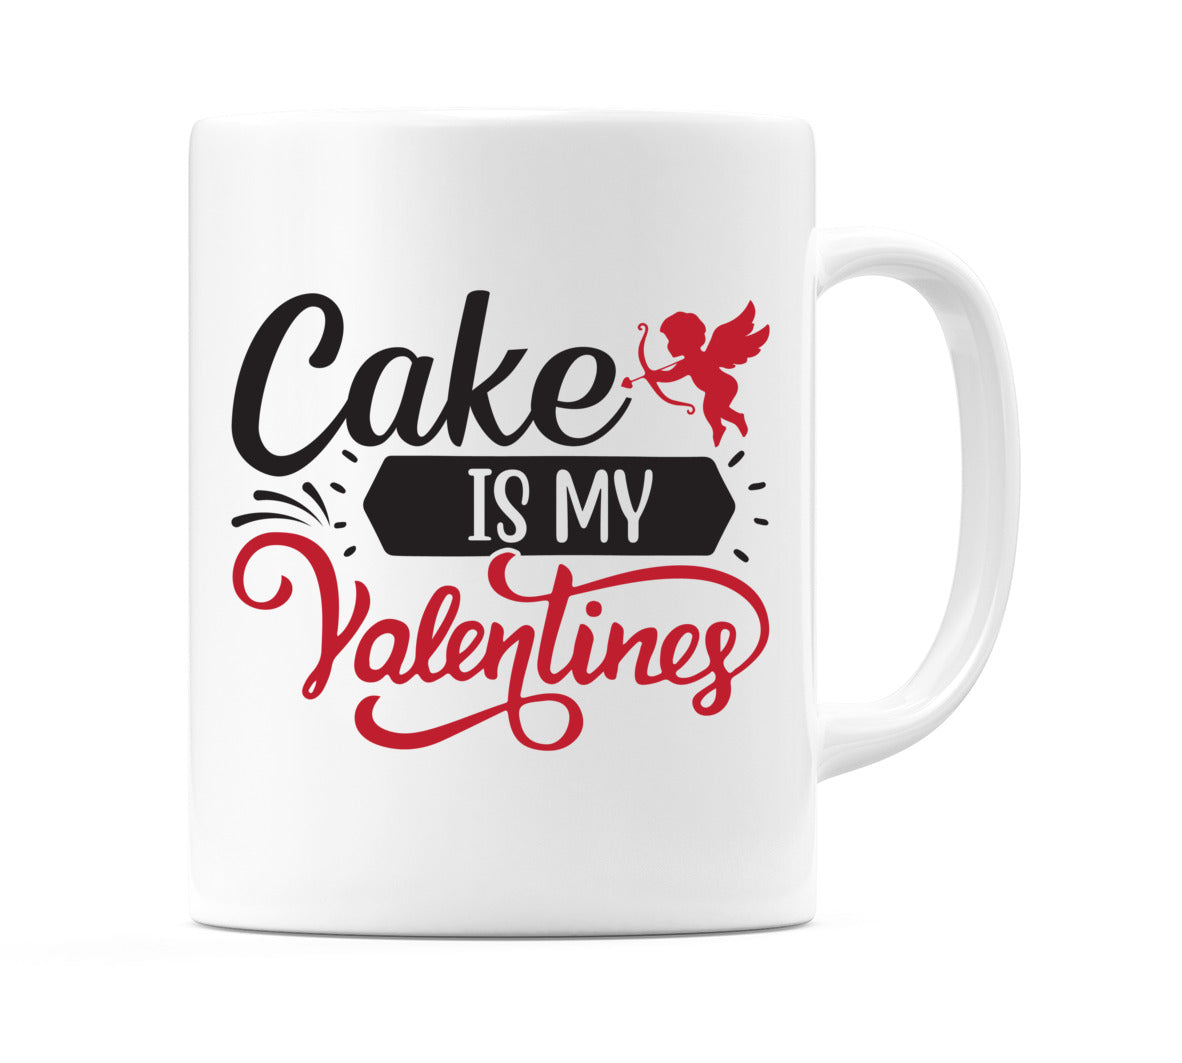 Cake is my Valentine Mug